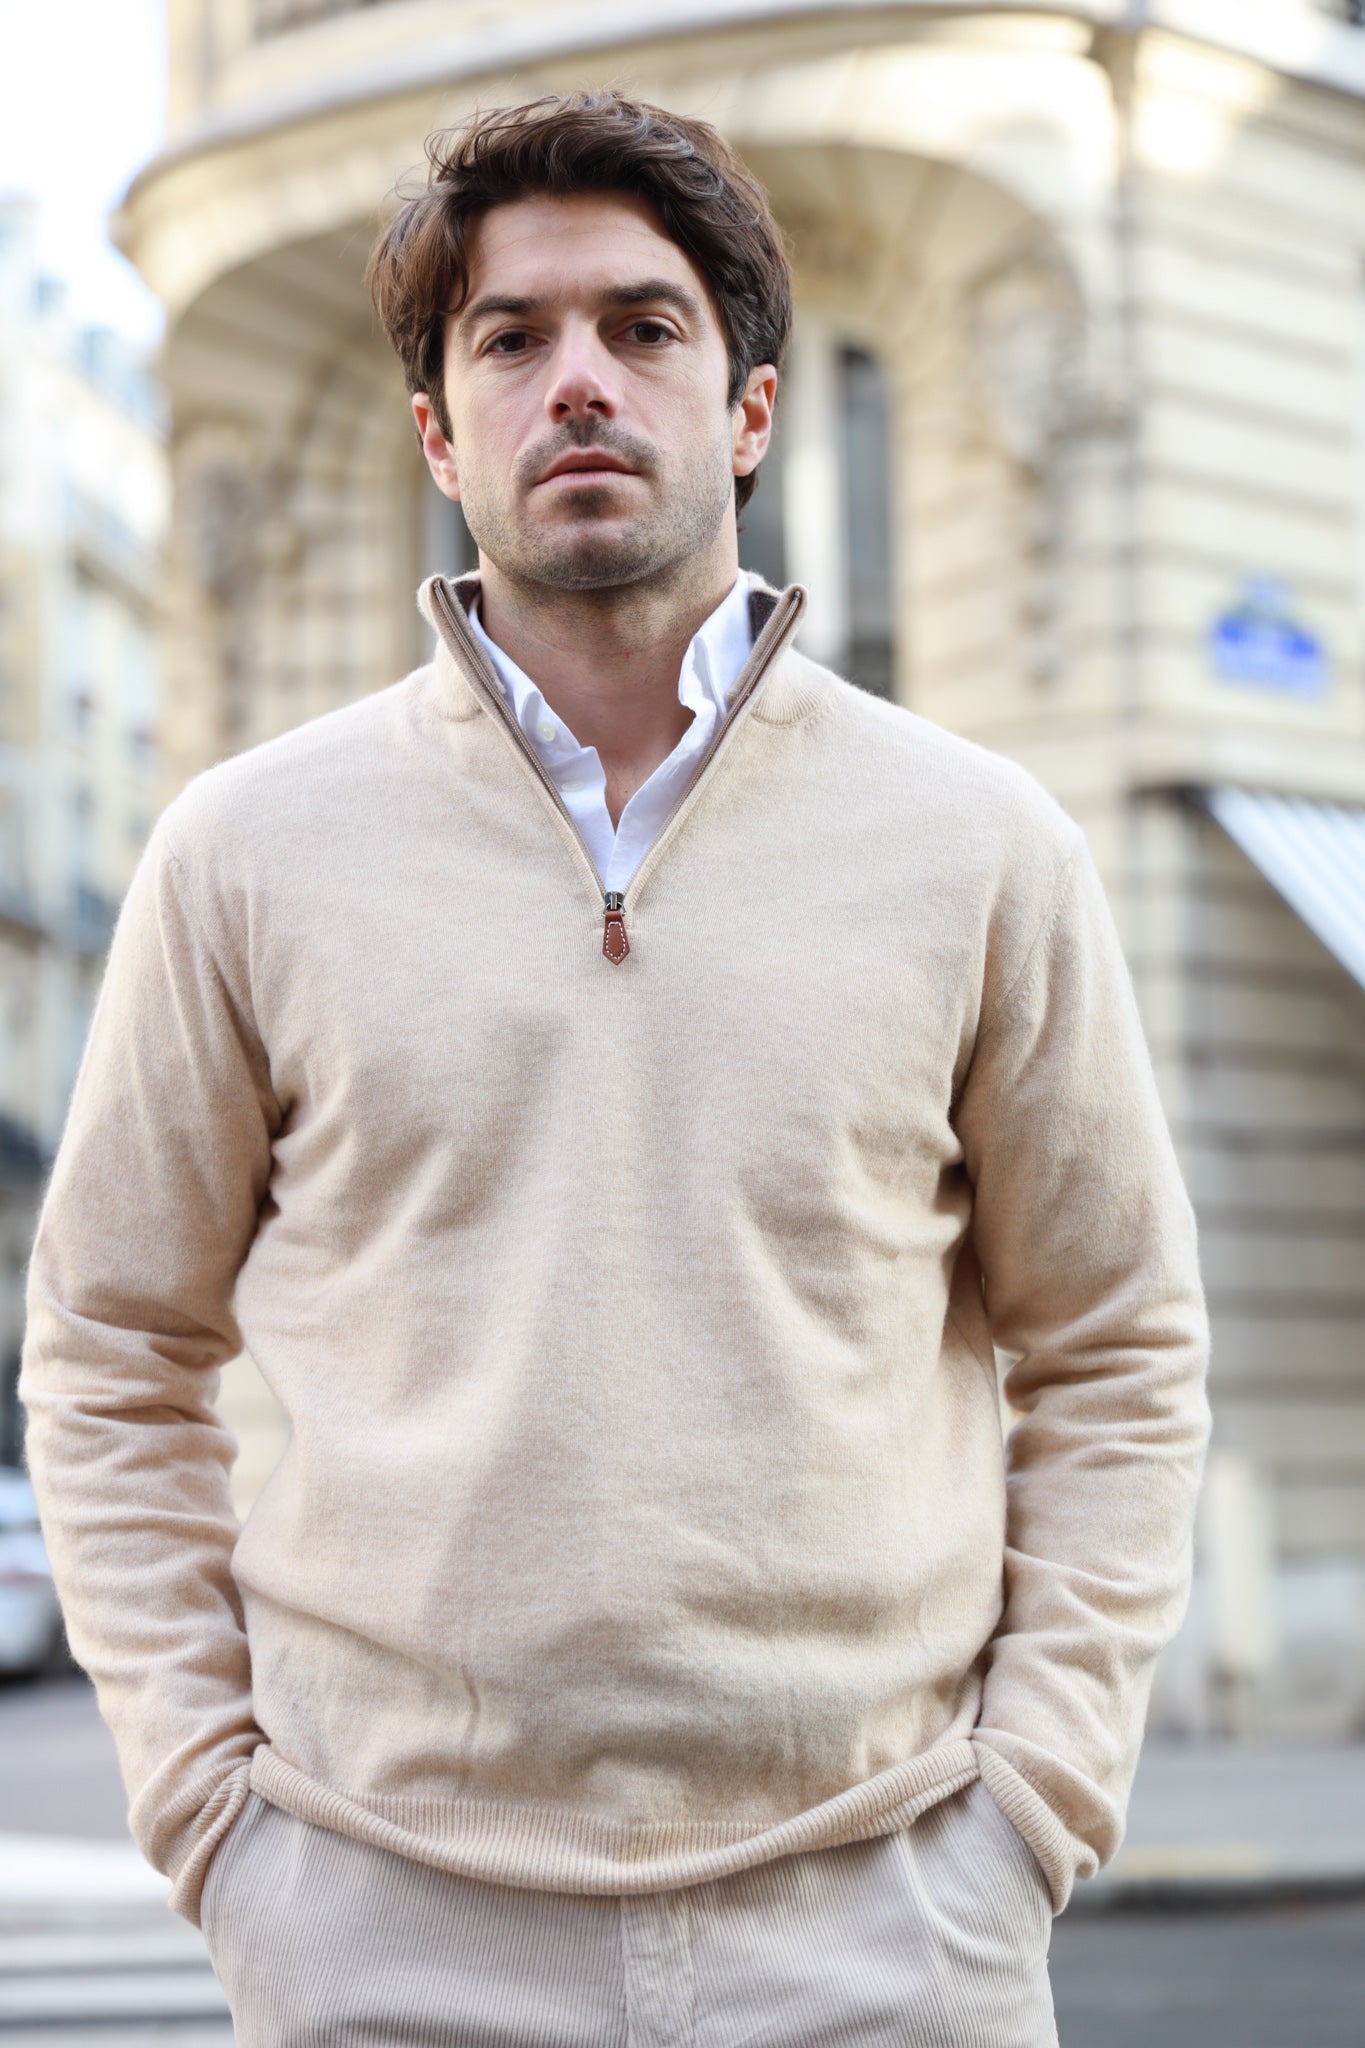 Pull homme à col zippé en laine d'agneau bleu jean - Curling Paris